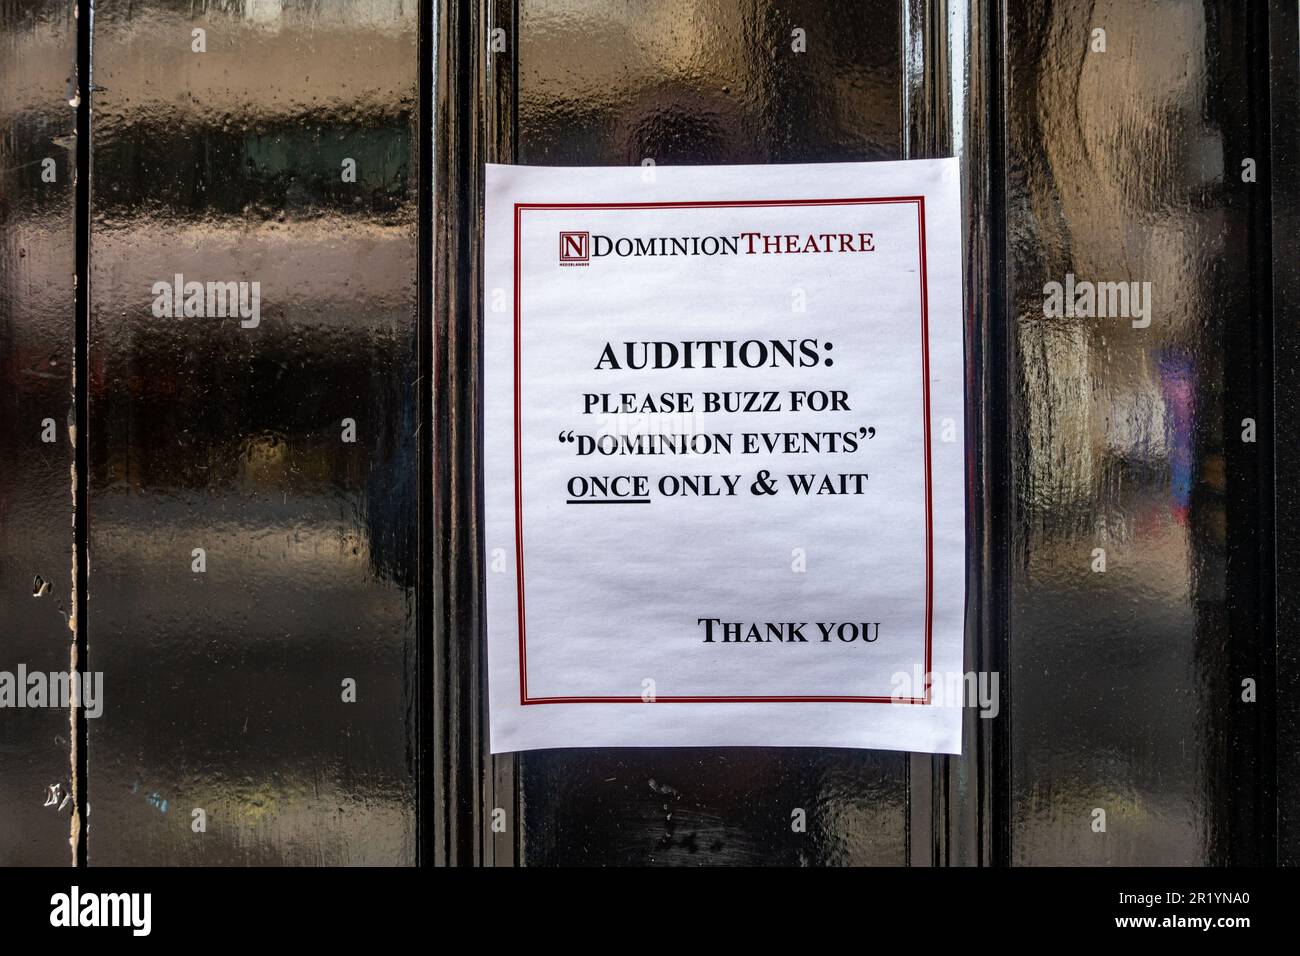 Fíjate en una puerta trasera negra del Teatro Dominion en Londres, Reino Unido, diciendo a la gente que llega para audiciones que haga sonar la campana una vez. Foto de stock